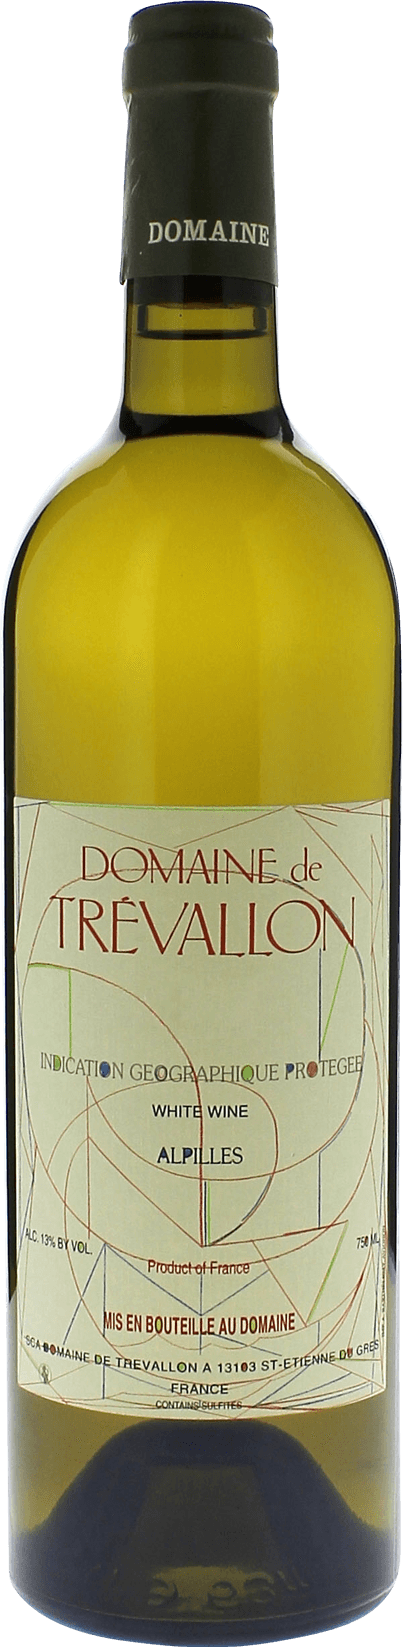 Domaine de trevallon blanc 2008  Vin de Pays, Provence